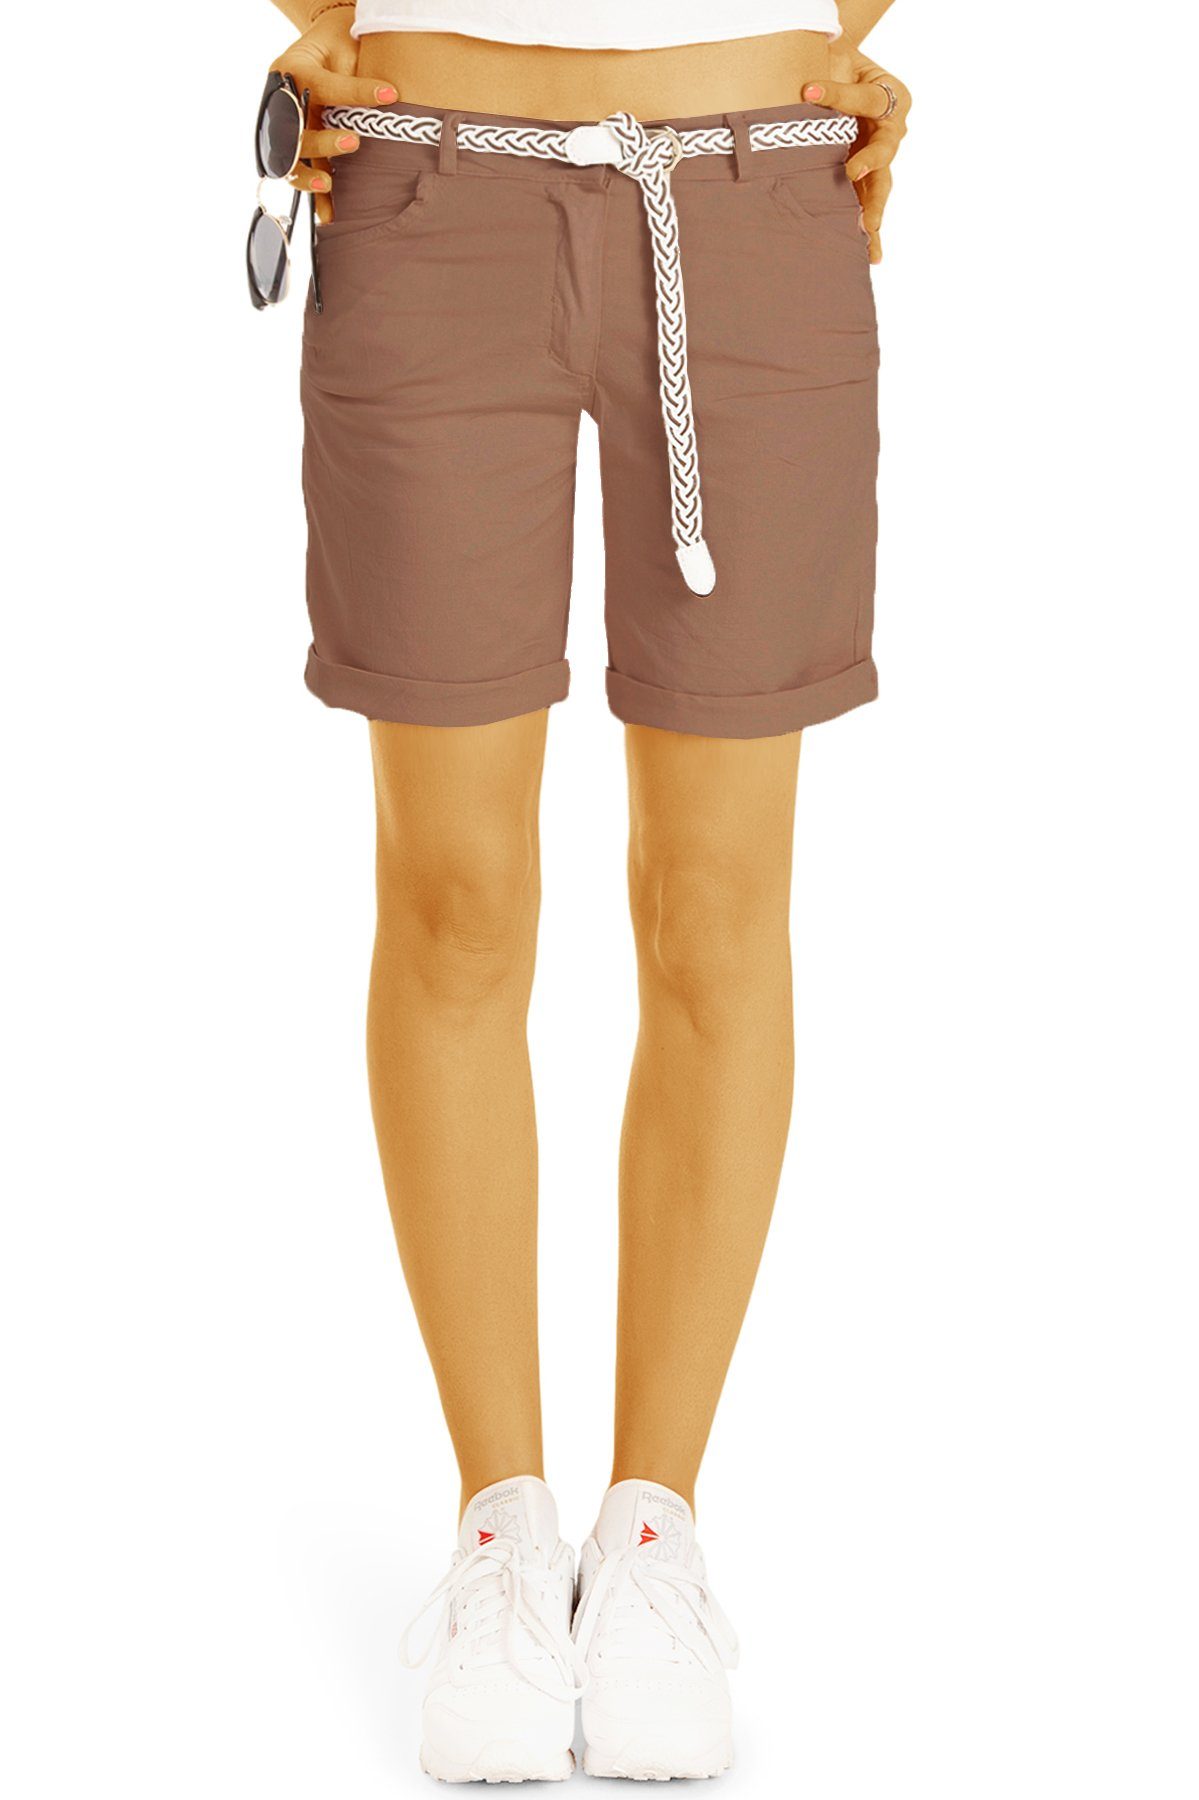 Hosen - Damen Shorts Unifarben, styled mit Gürtel braun Gürtel lockere Kurze - be h23a in mit - Chino Stoff Shorts